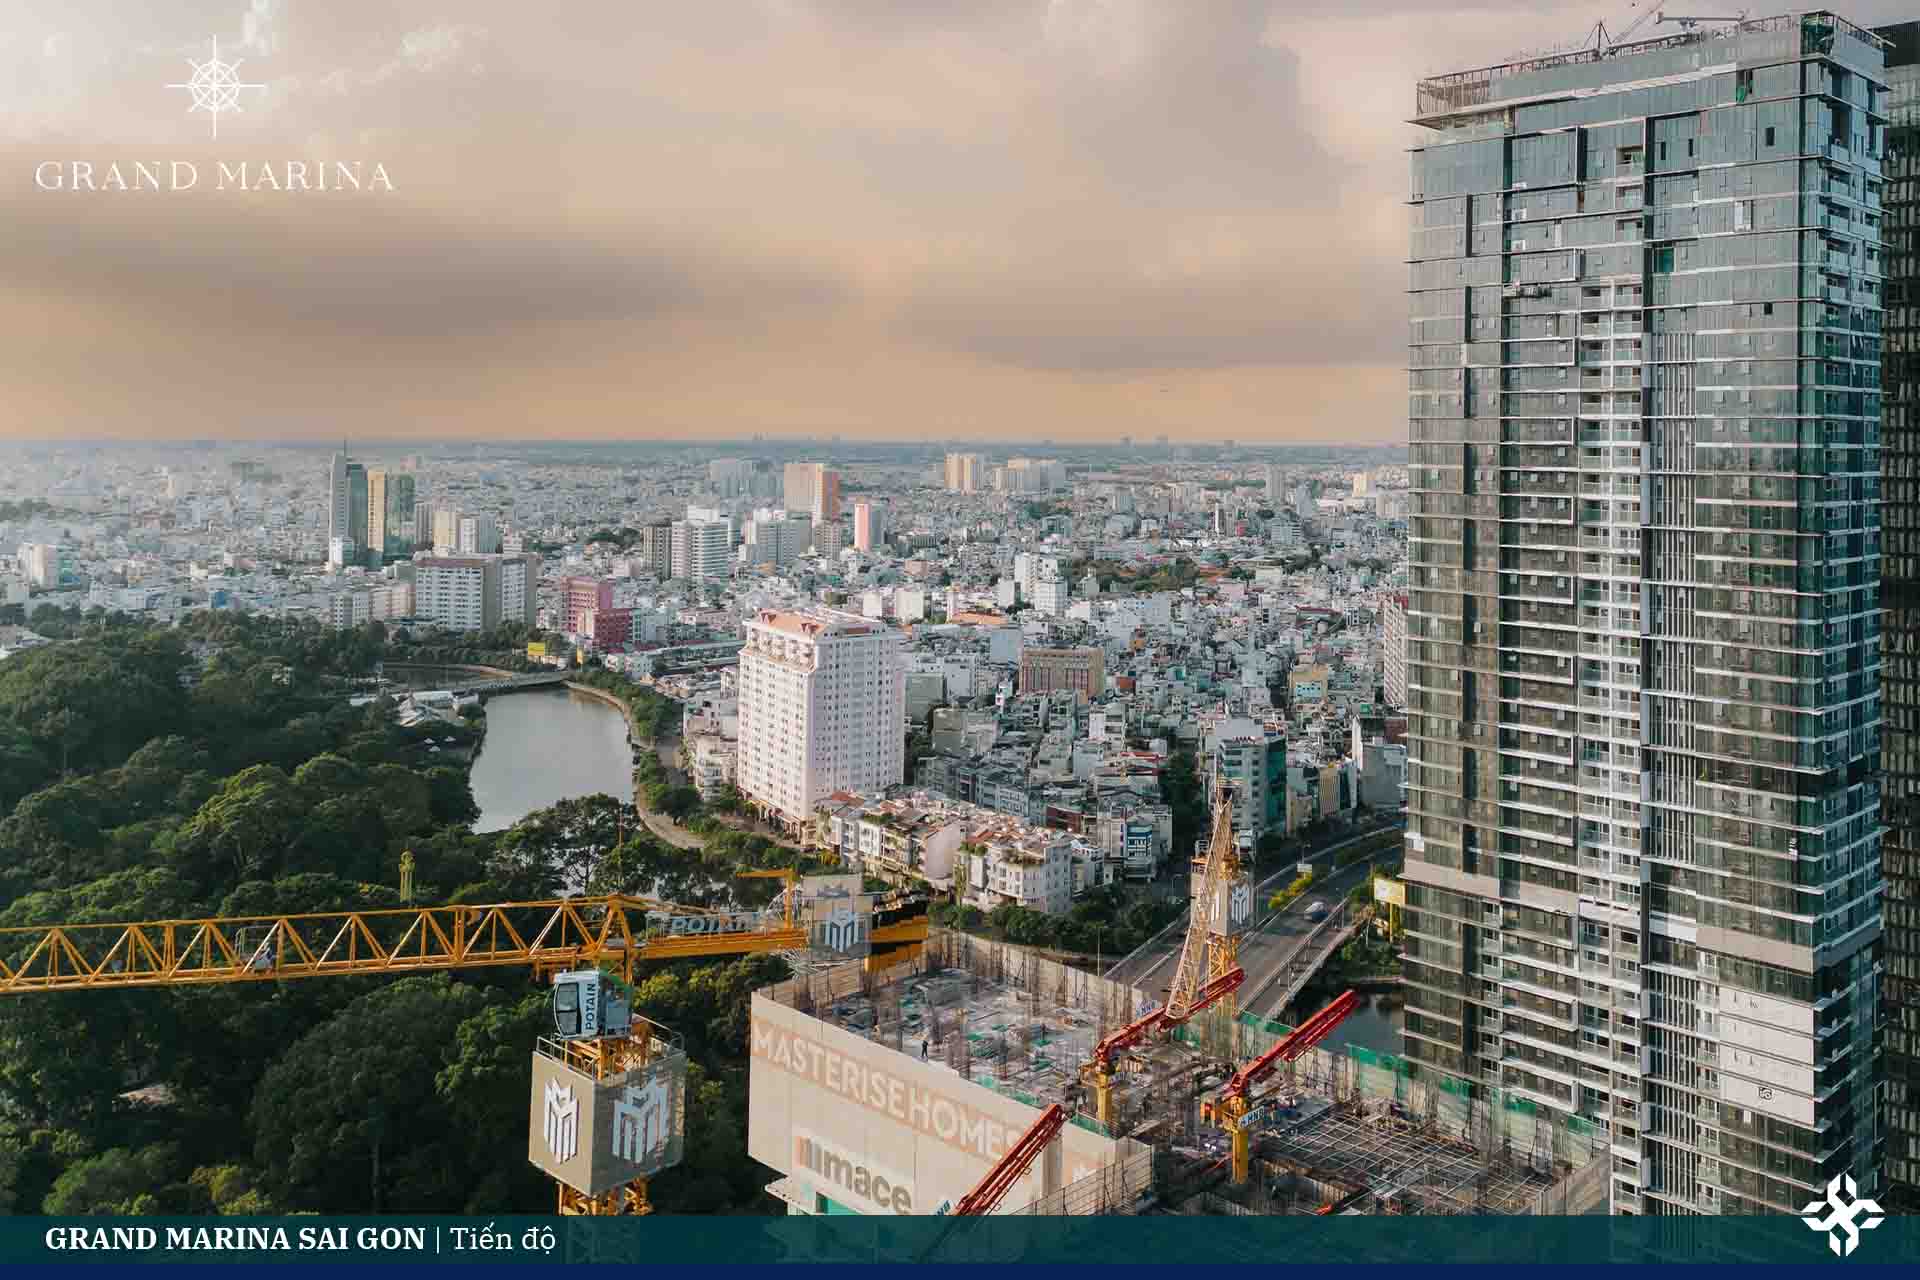 Grand Marina Saigon | Tiến độ dự án căn hộ hàng hiệu Mariott Bason.